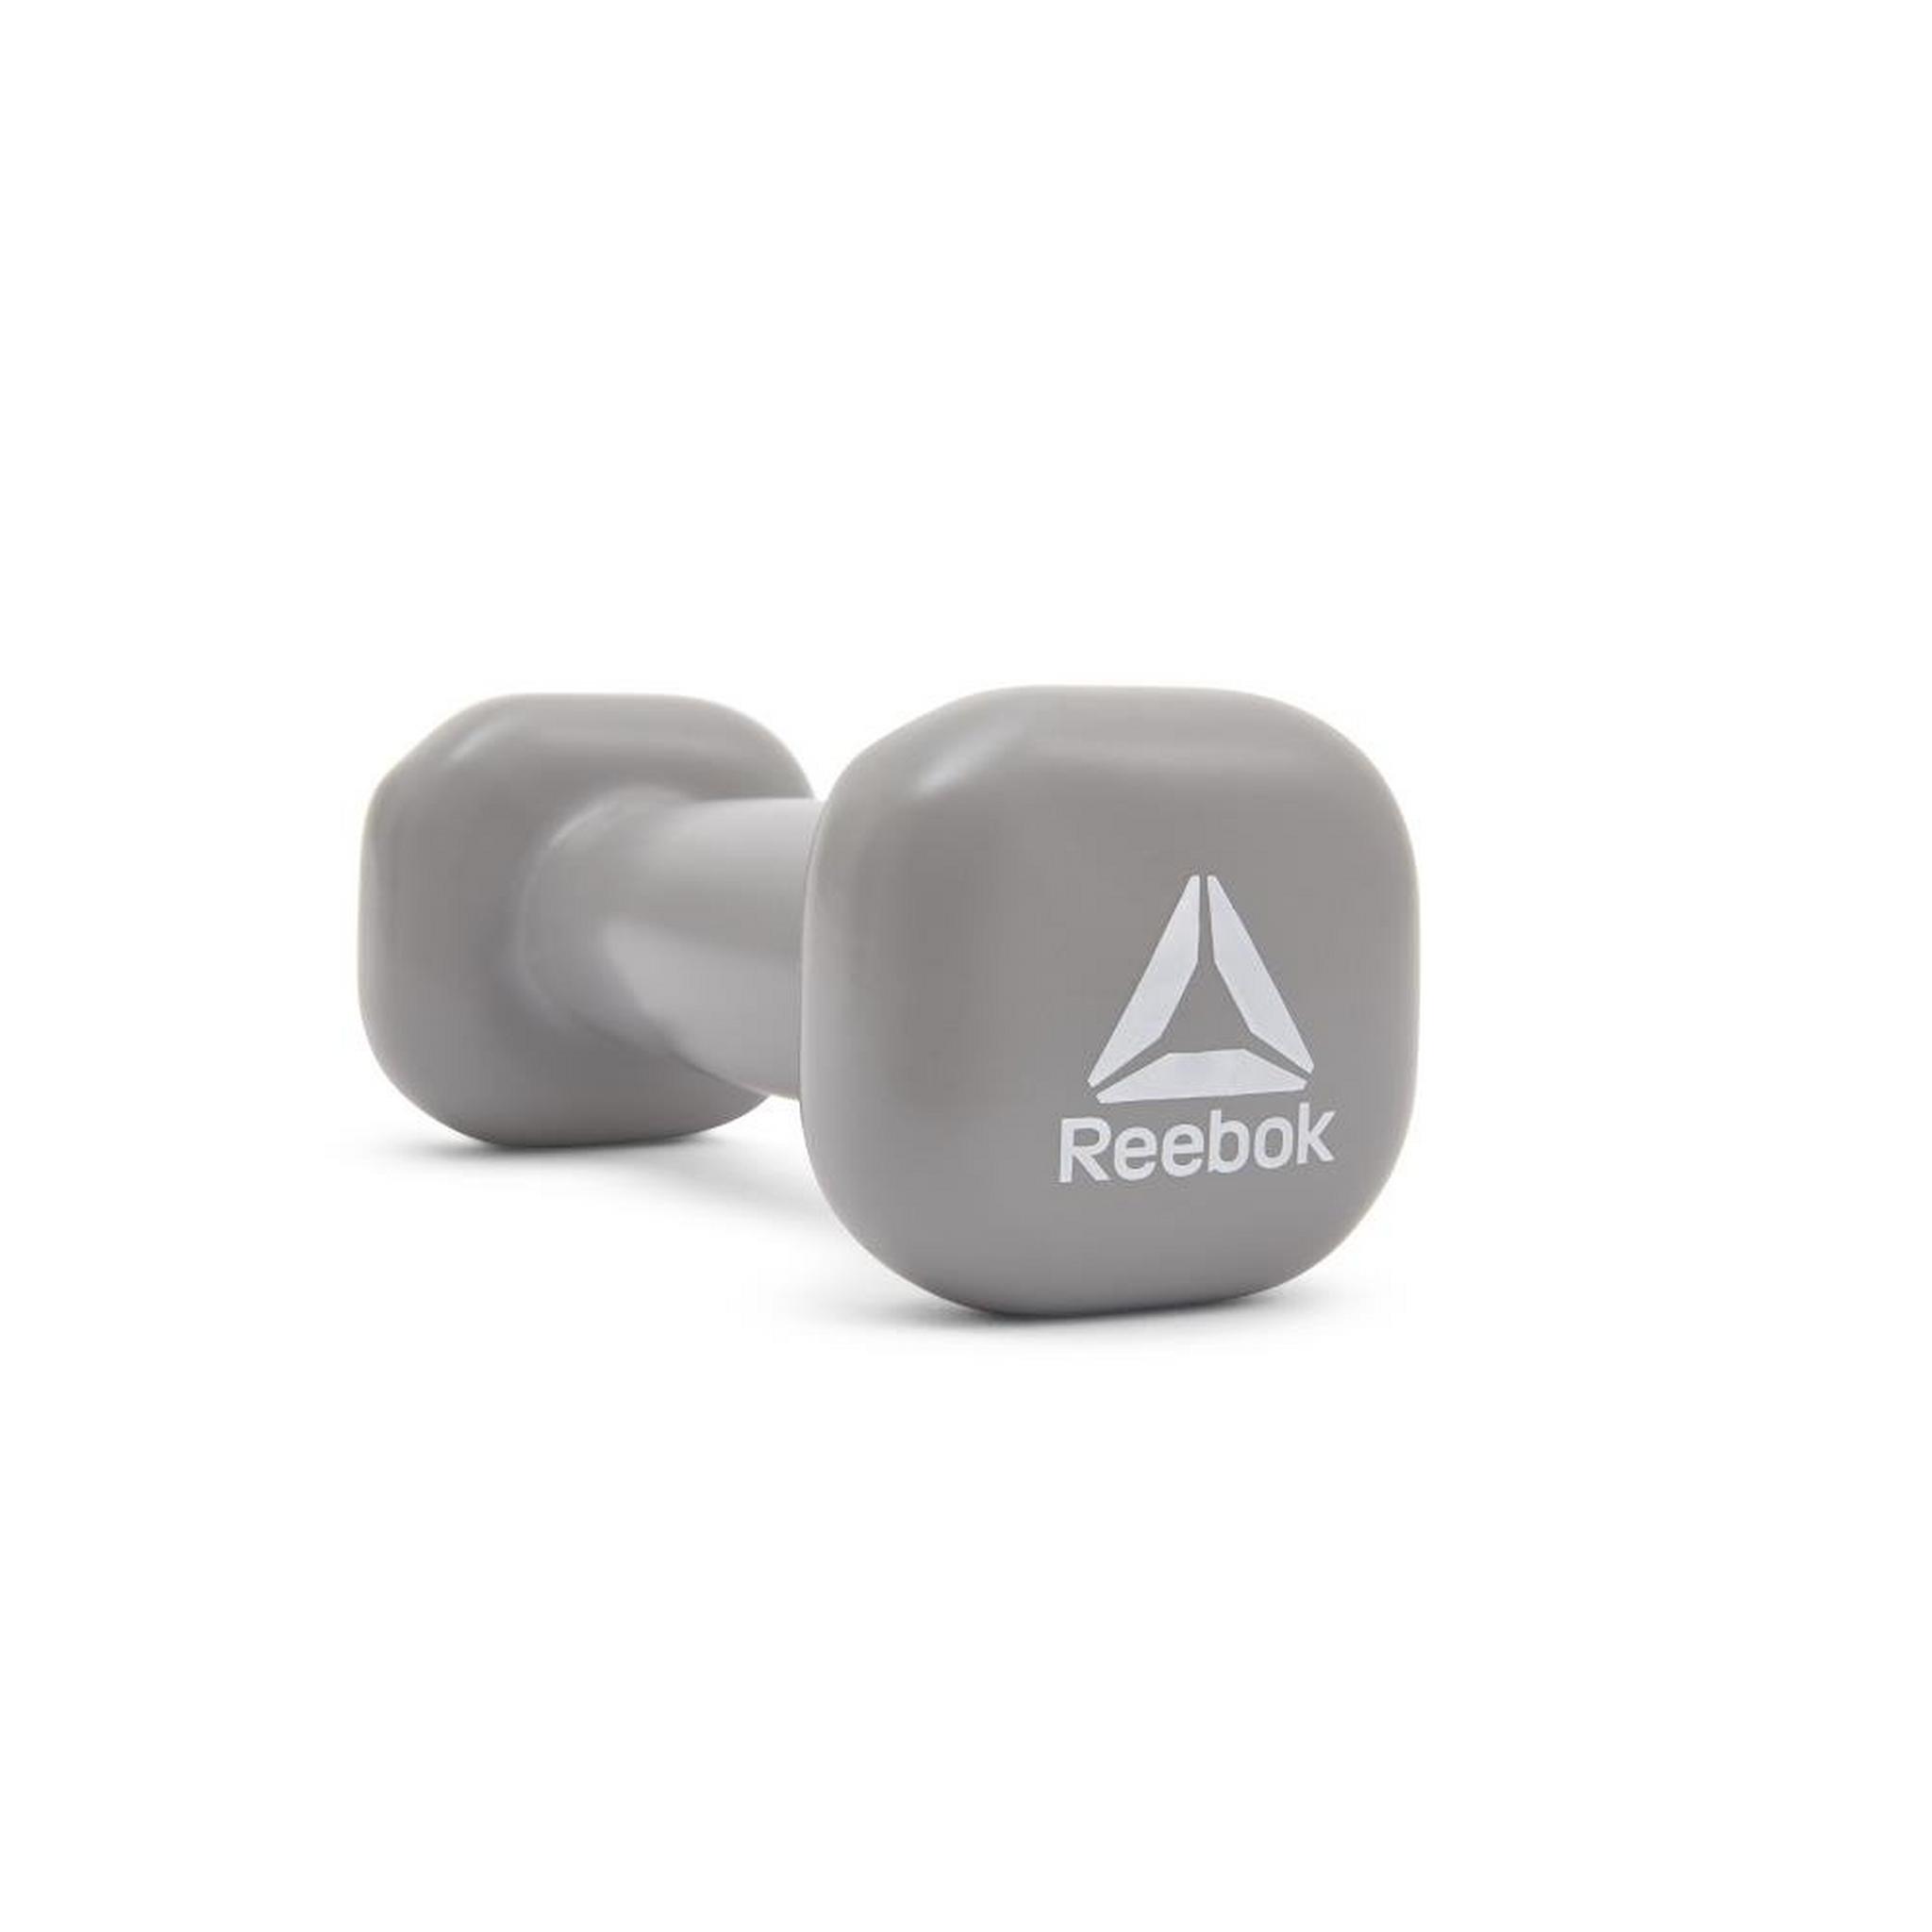 Reebok 1 KG Fixed Weight Dumbbell (RAWT-11151) - Grey